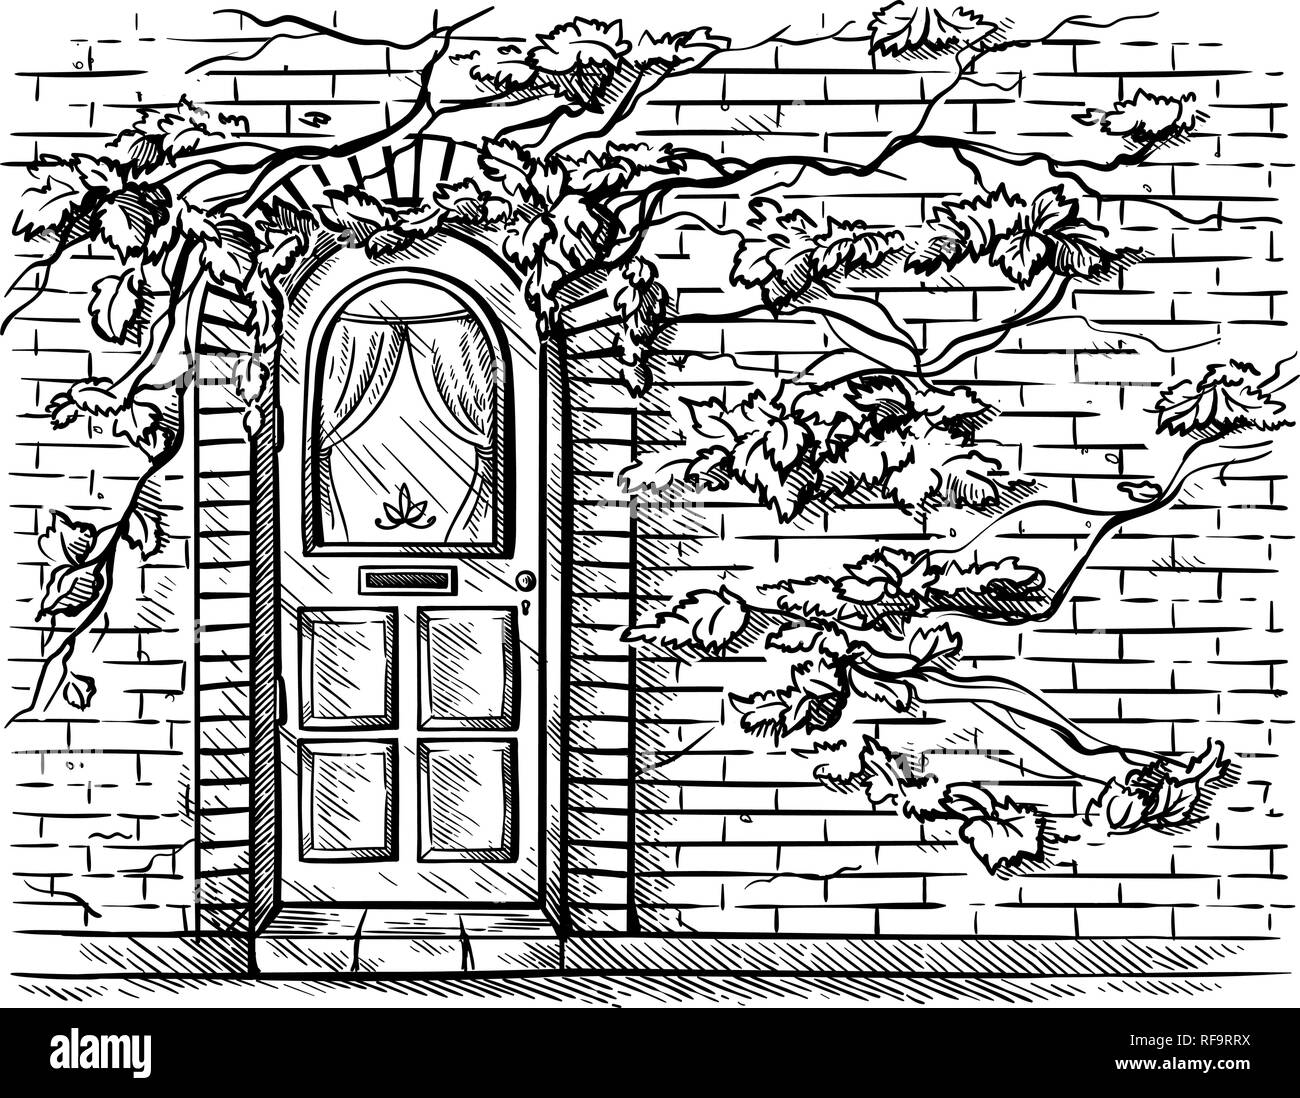 Croquis dessinés à la main, vieille porte en bois en arche en brique mur tressé raisin vector illustration Illustration de Vecteur